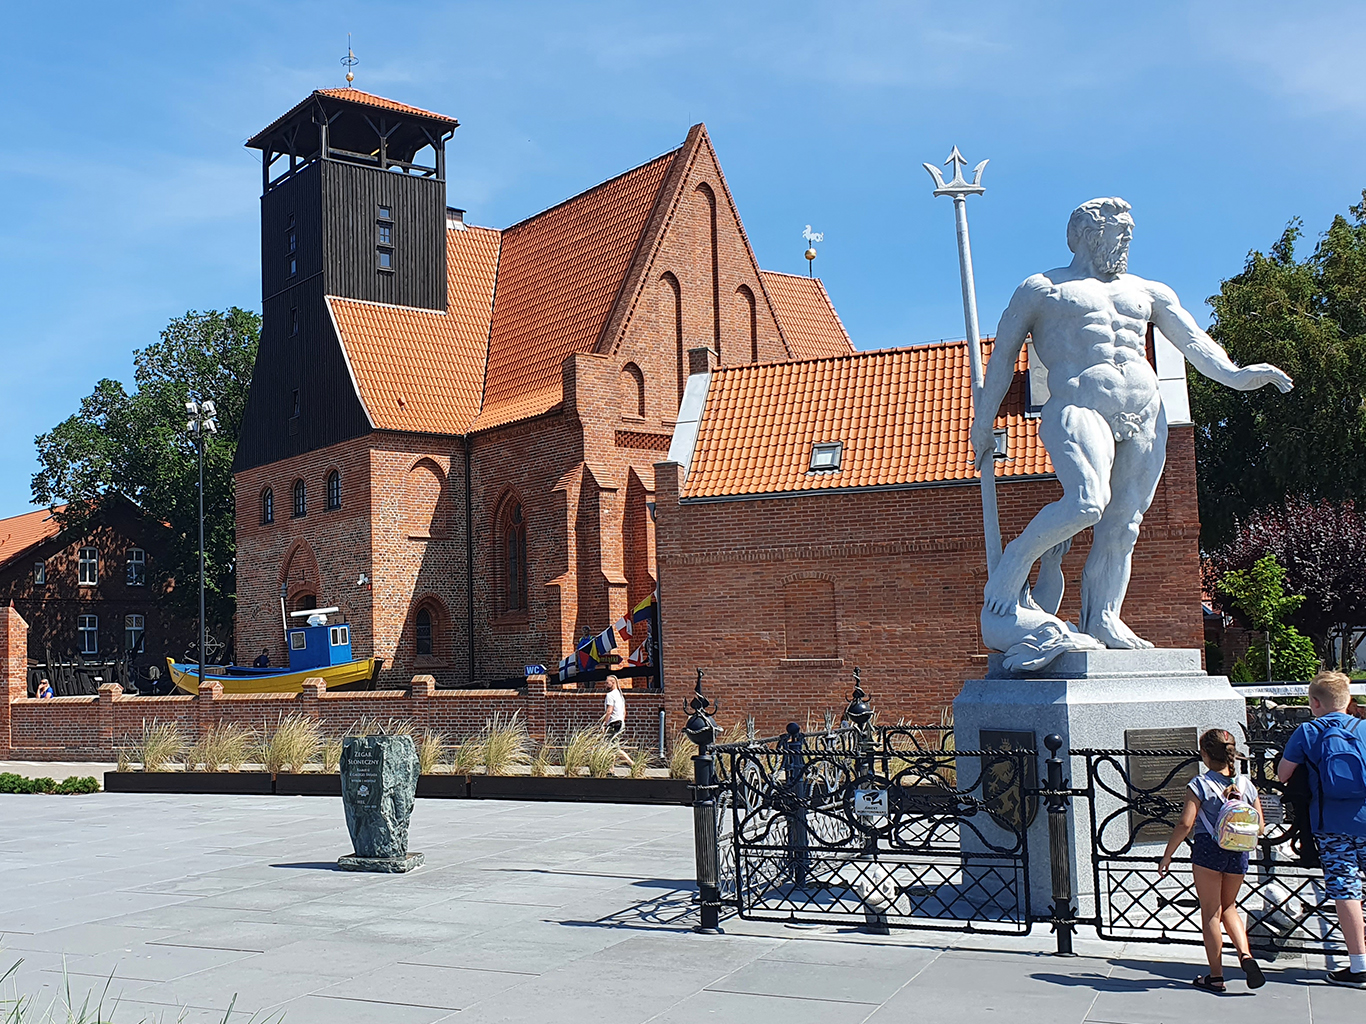 Socha Neptuna v přímořském městečku Hel je kopií italské verze v Bologni